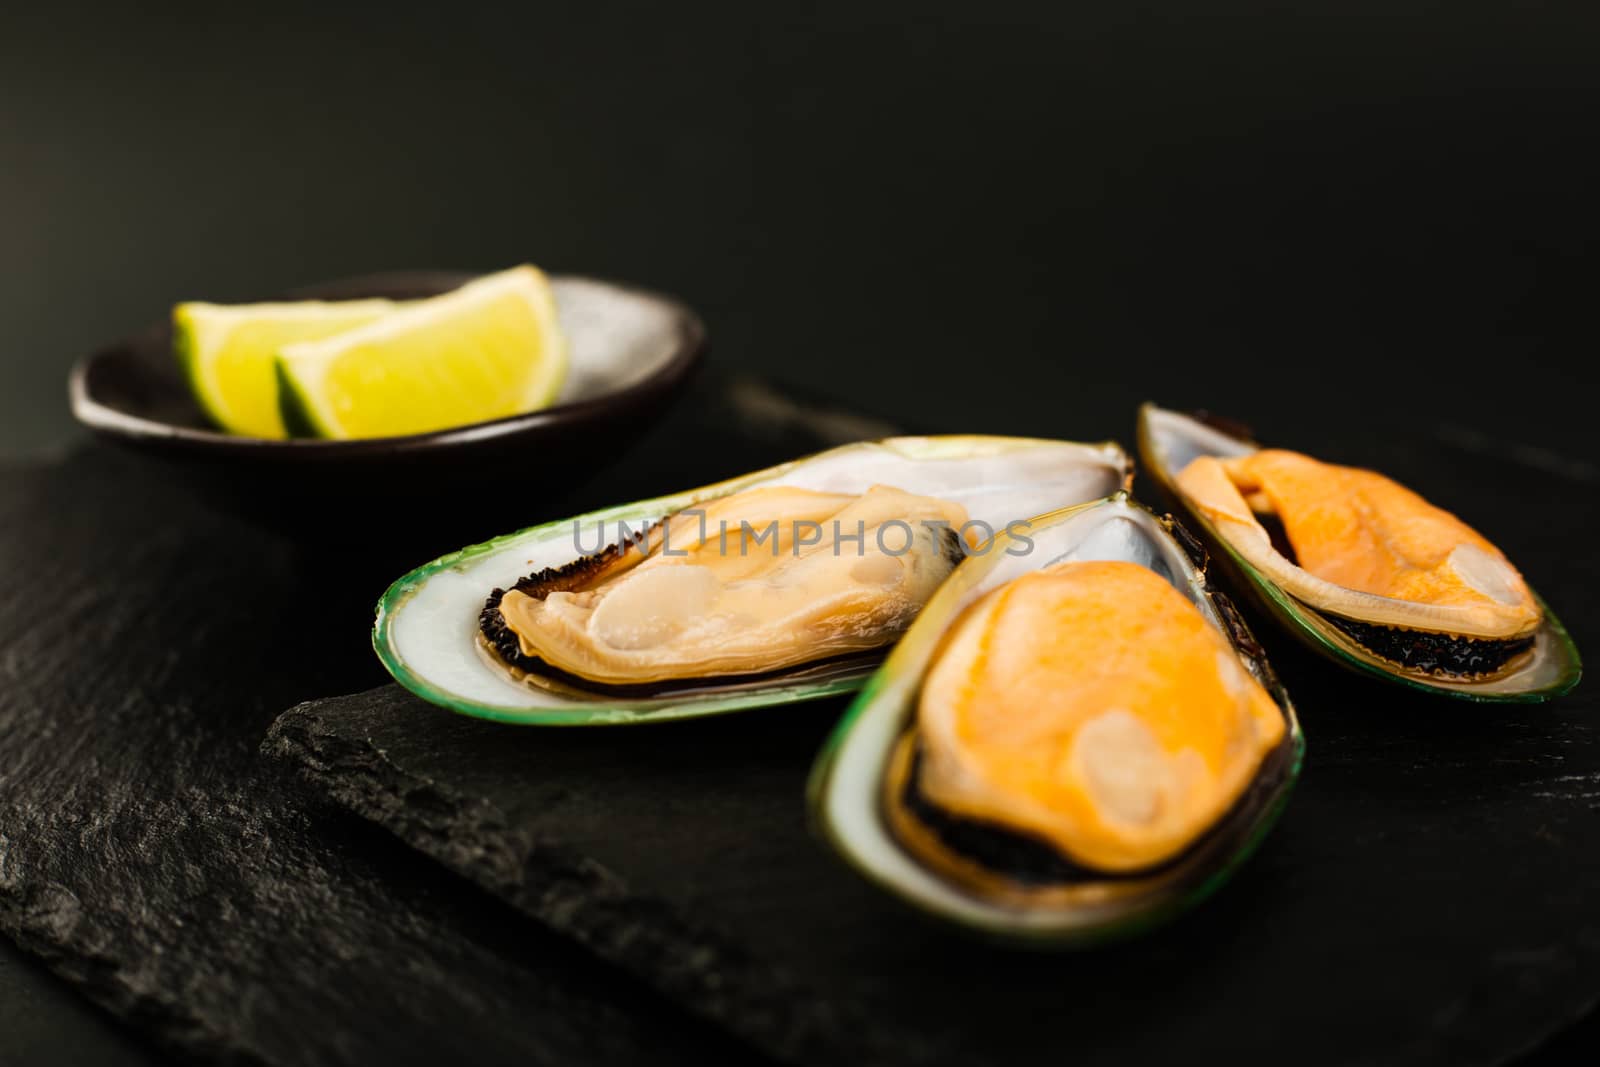 New Zealand greenshell mussels by destillat